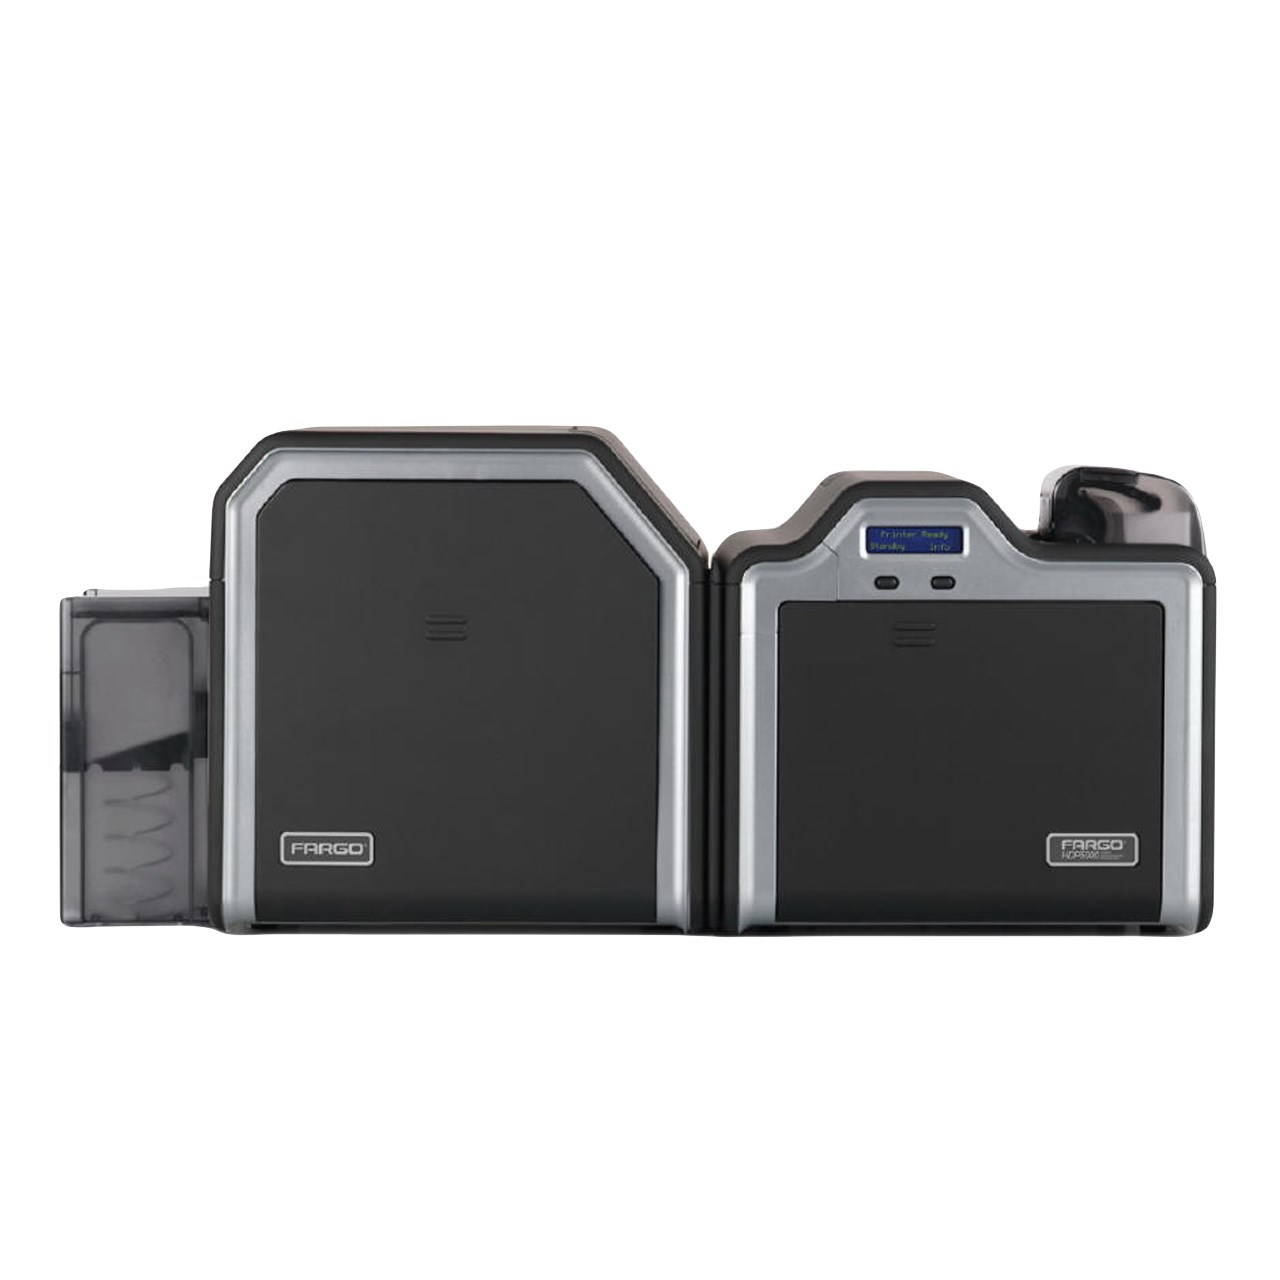 پرینتر کارت فارگو مدل HDP5000 همراه با ماژول دورو و لمینیتور